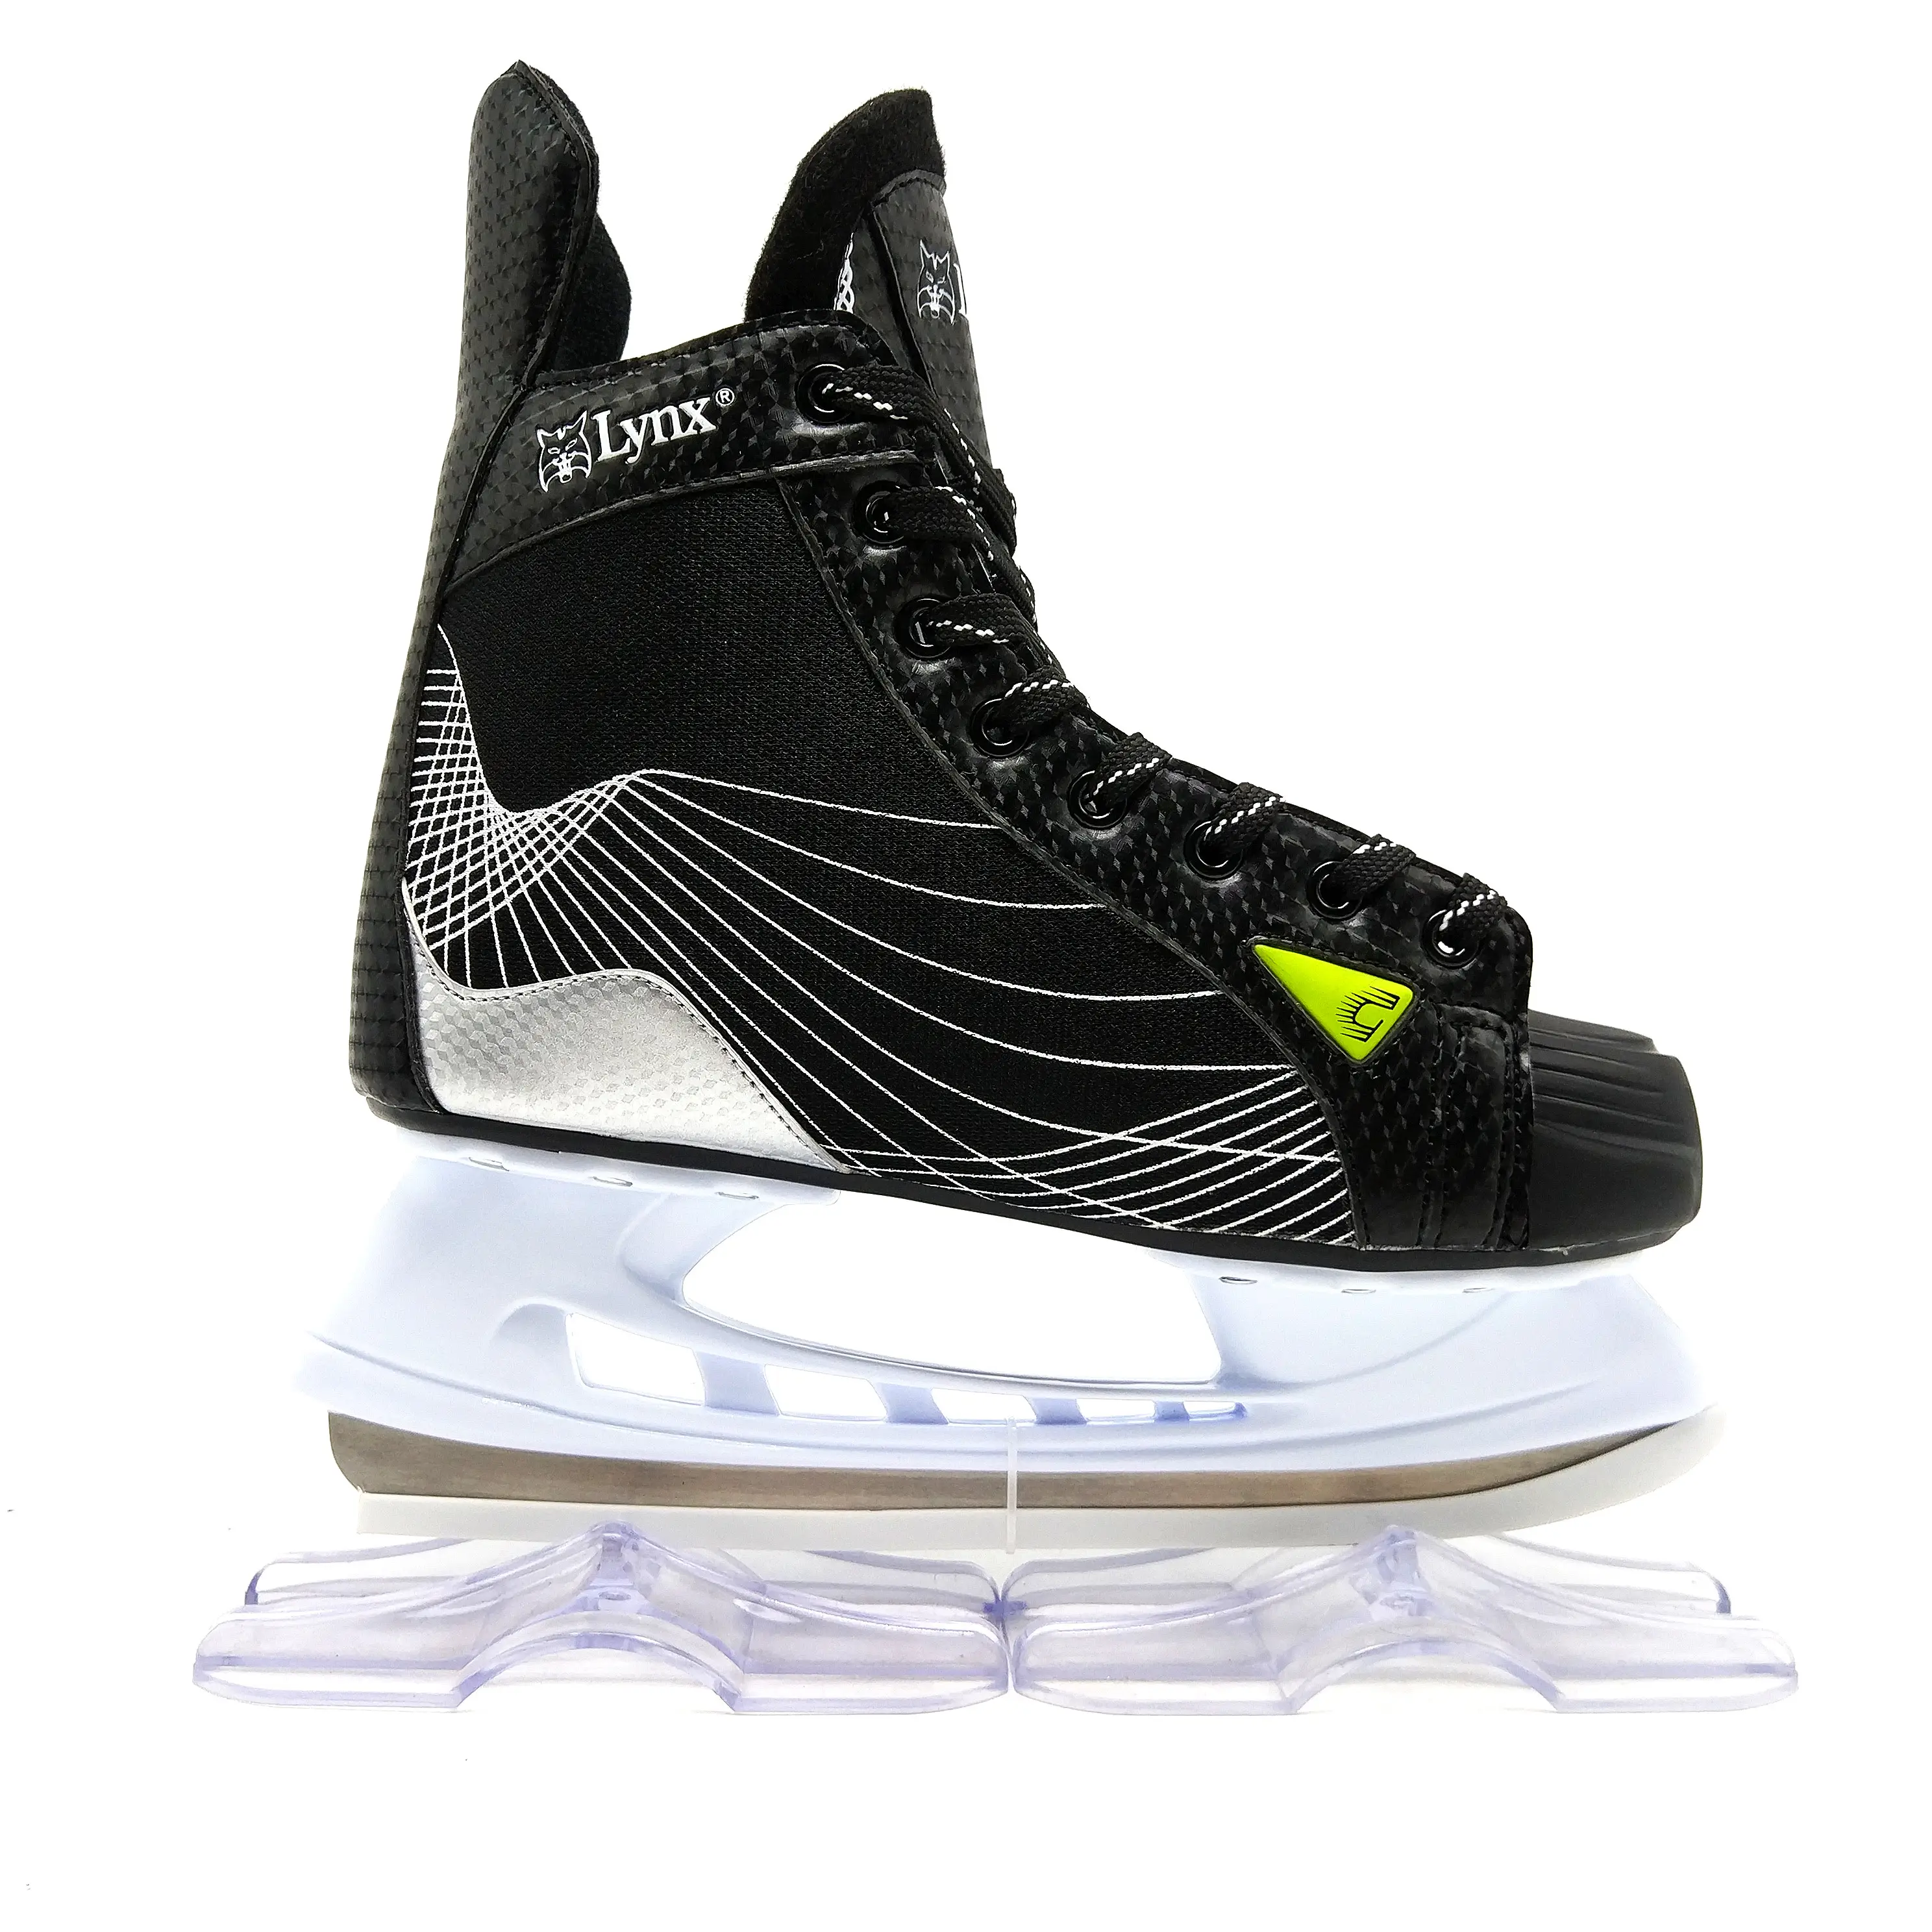 2022 حار بيع الصويا لونا أحذية التزلج على الجليد للأطفال و المهنية البالغين الجليد هوكي الجليد